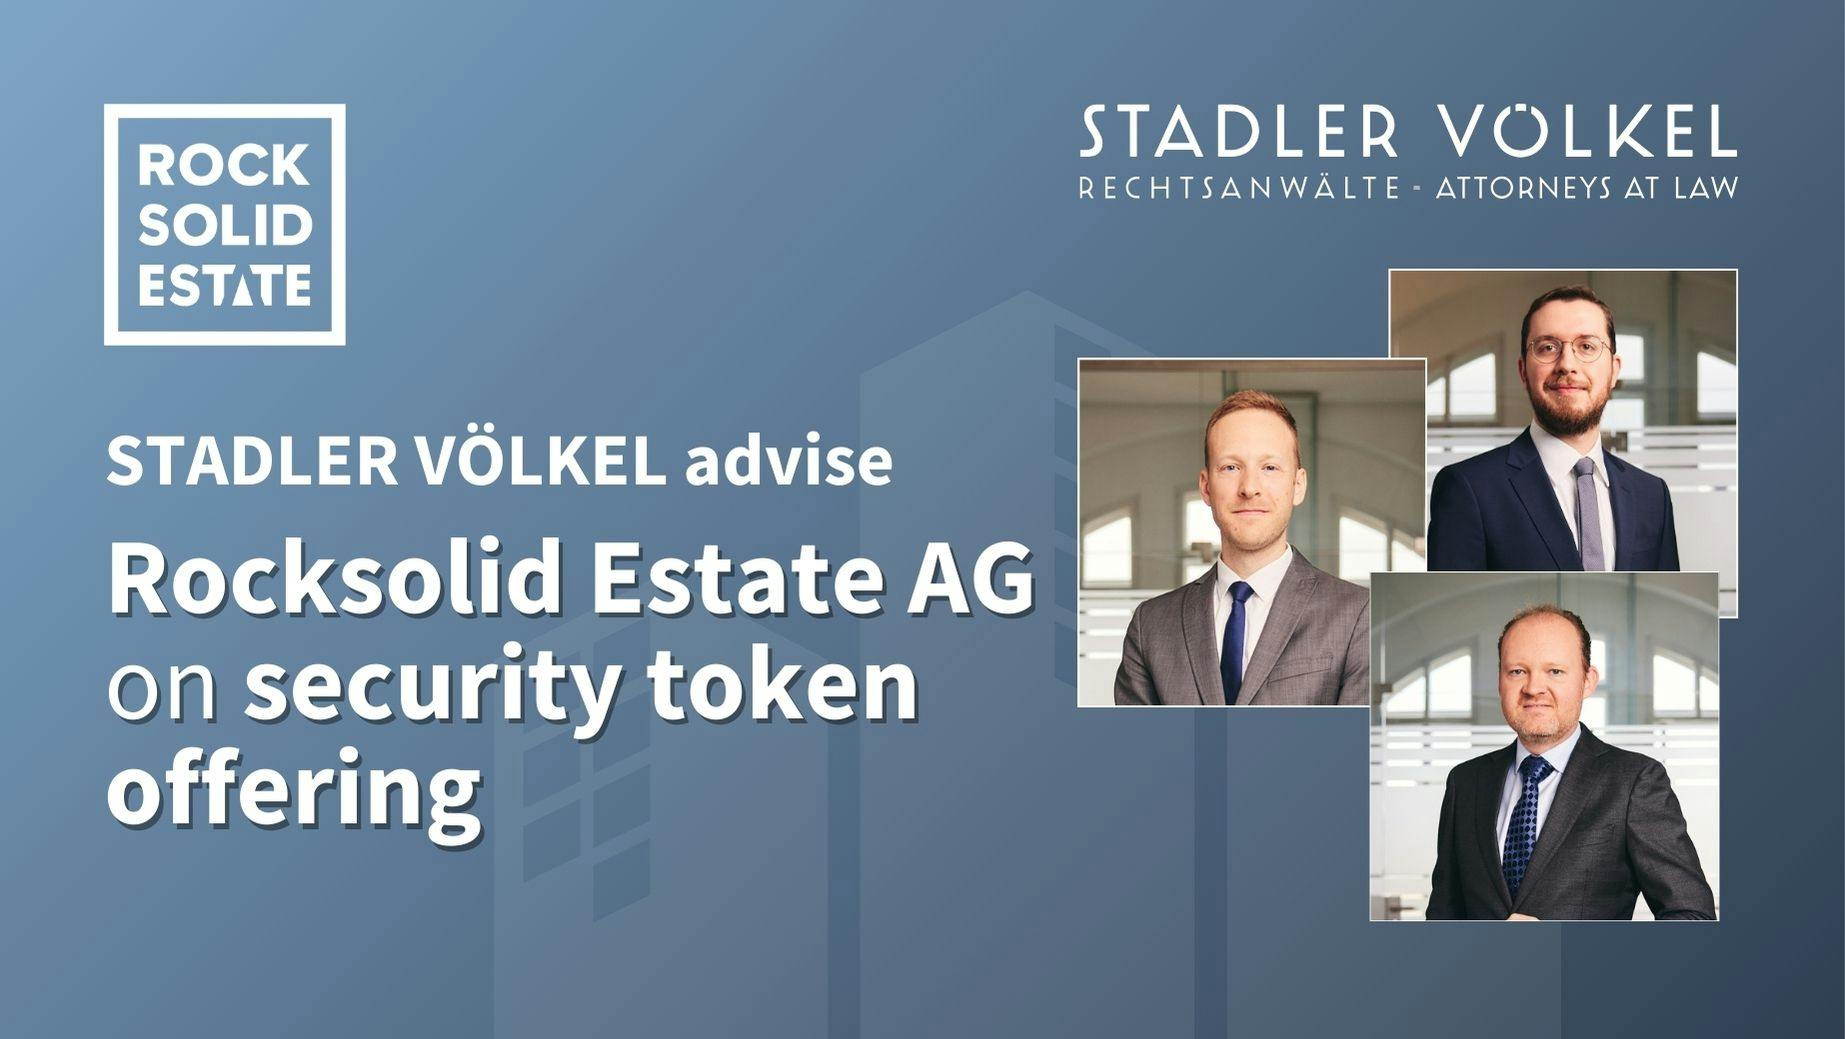 STADLER VÖLKEL advise Rocksolid Estate AG on Security Token Offering